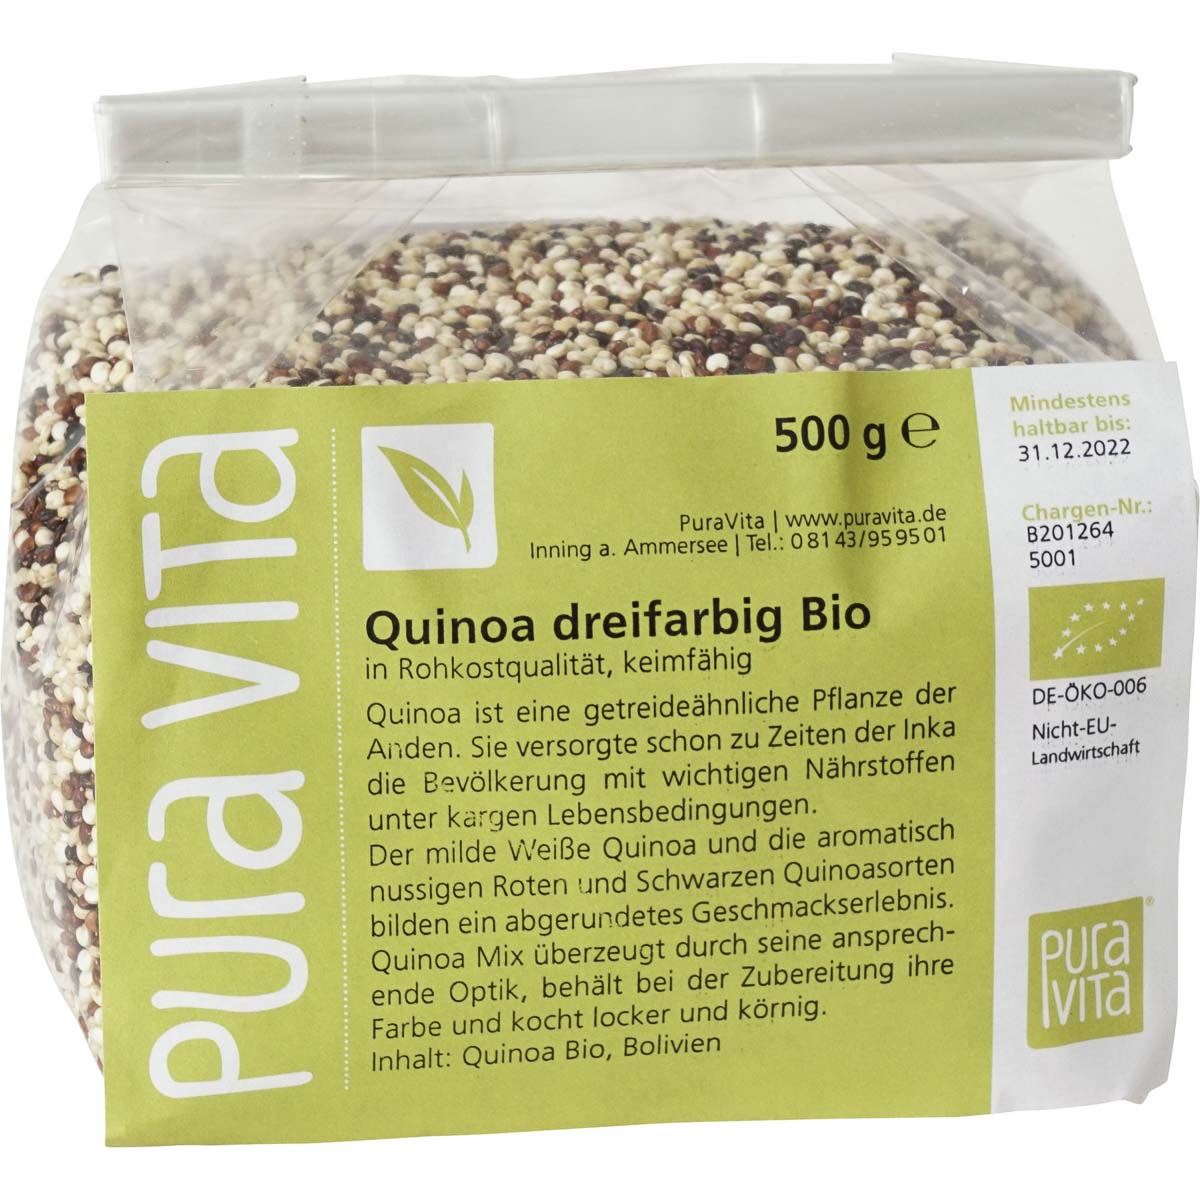 Quinoa dreifarbig Bio 500 g